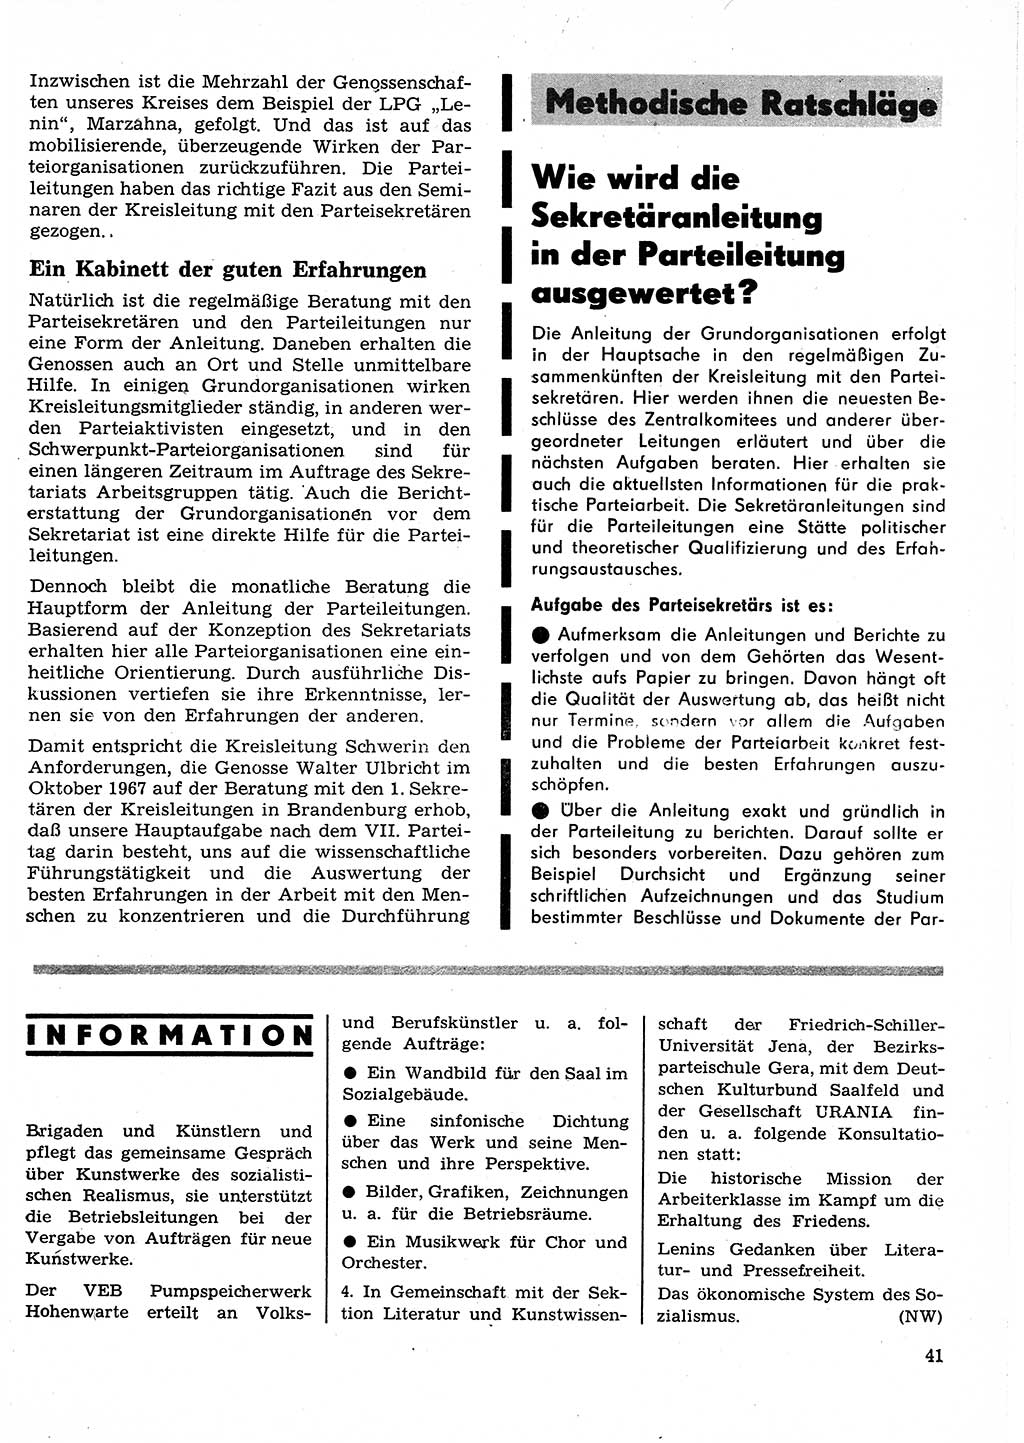 Neuer Weg (NW), Organ des Zentralkomitees (ZK) der SED (Sozialistische Einheitspartei Deutschlands) für Fragen des Parteilebens, 25. Jahrgang [Deutsche Demokratische Republik (DDR)] 1970, Seite 41 (NW ZK SED DDR 1970, S. 41)